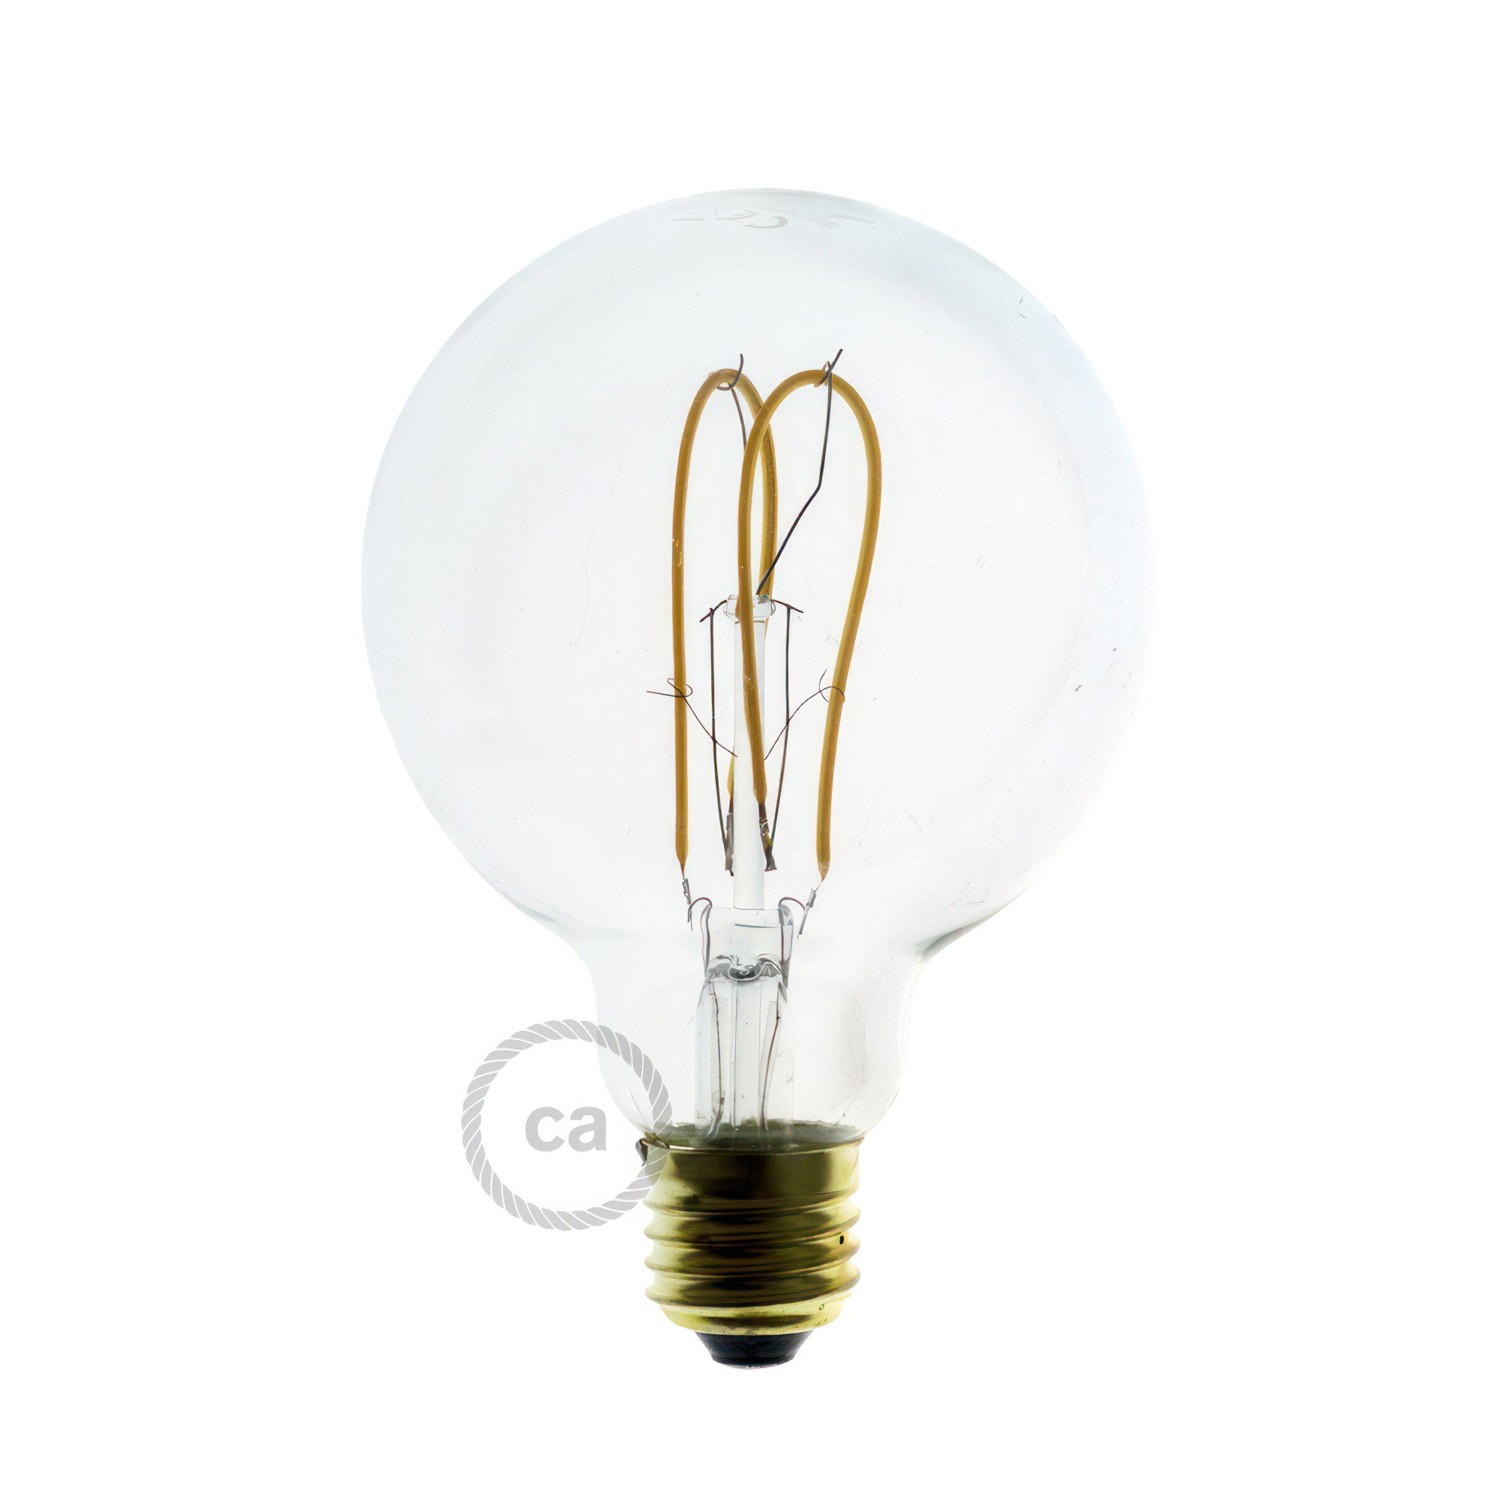 Flex 30 Lampe med Globe-pære